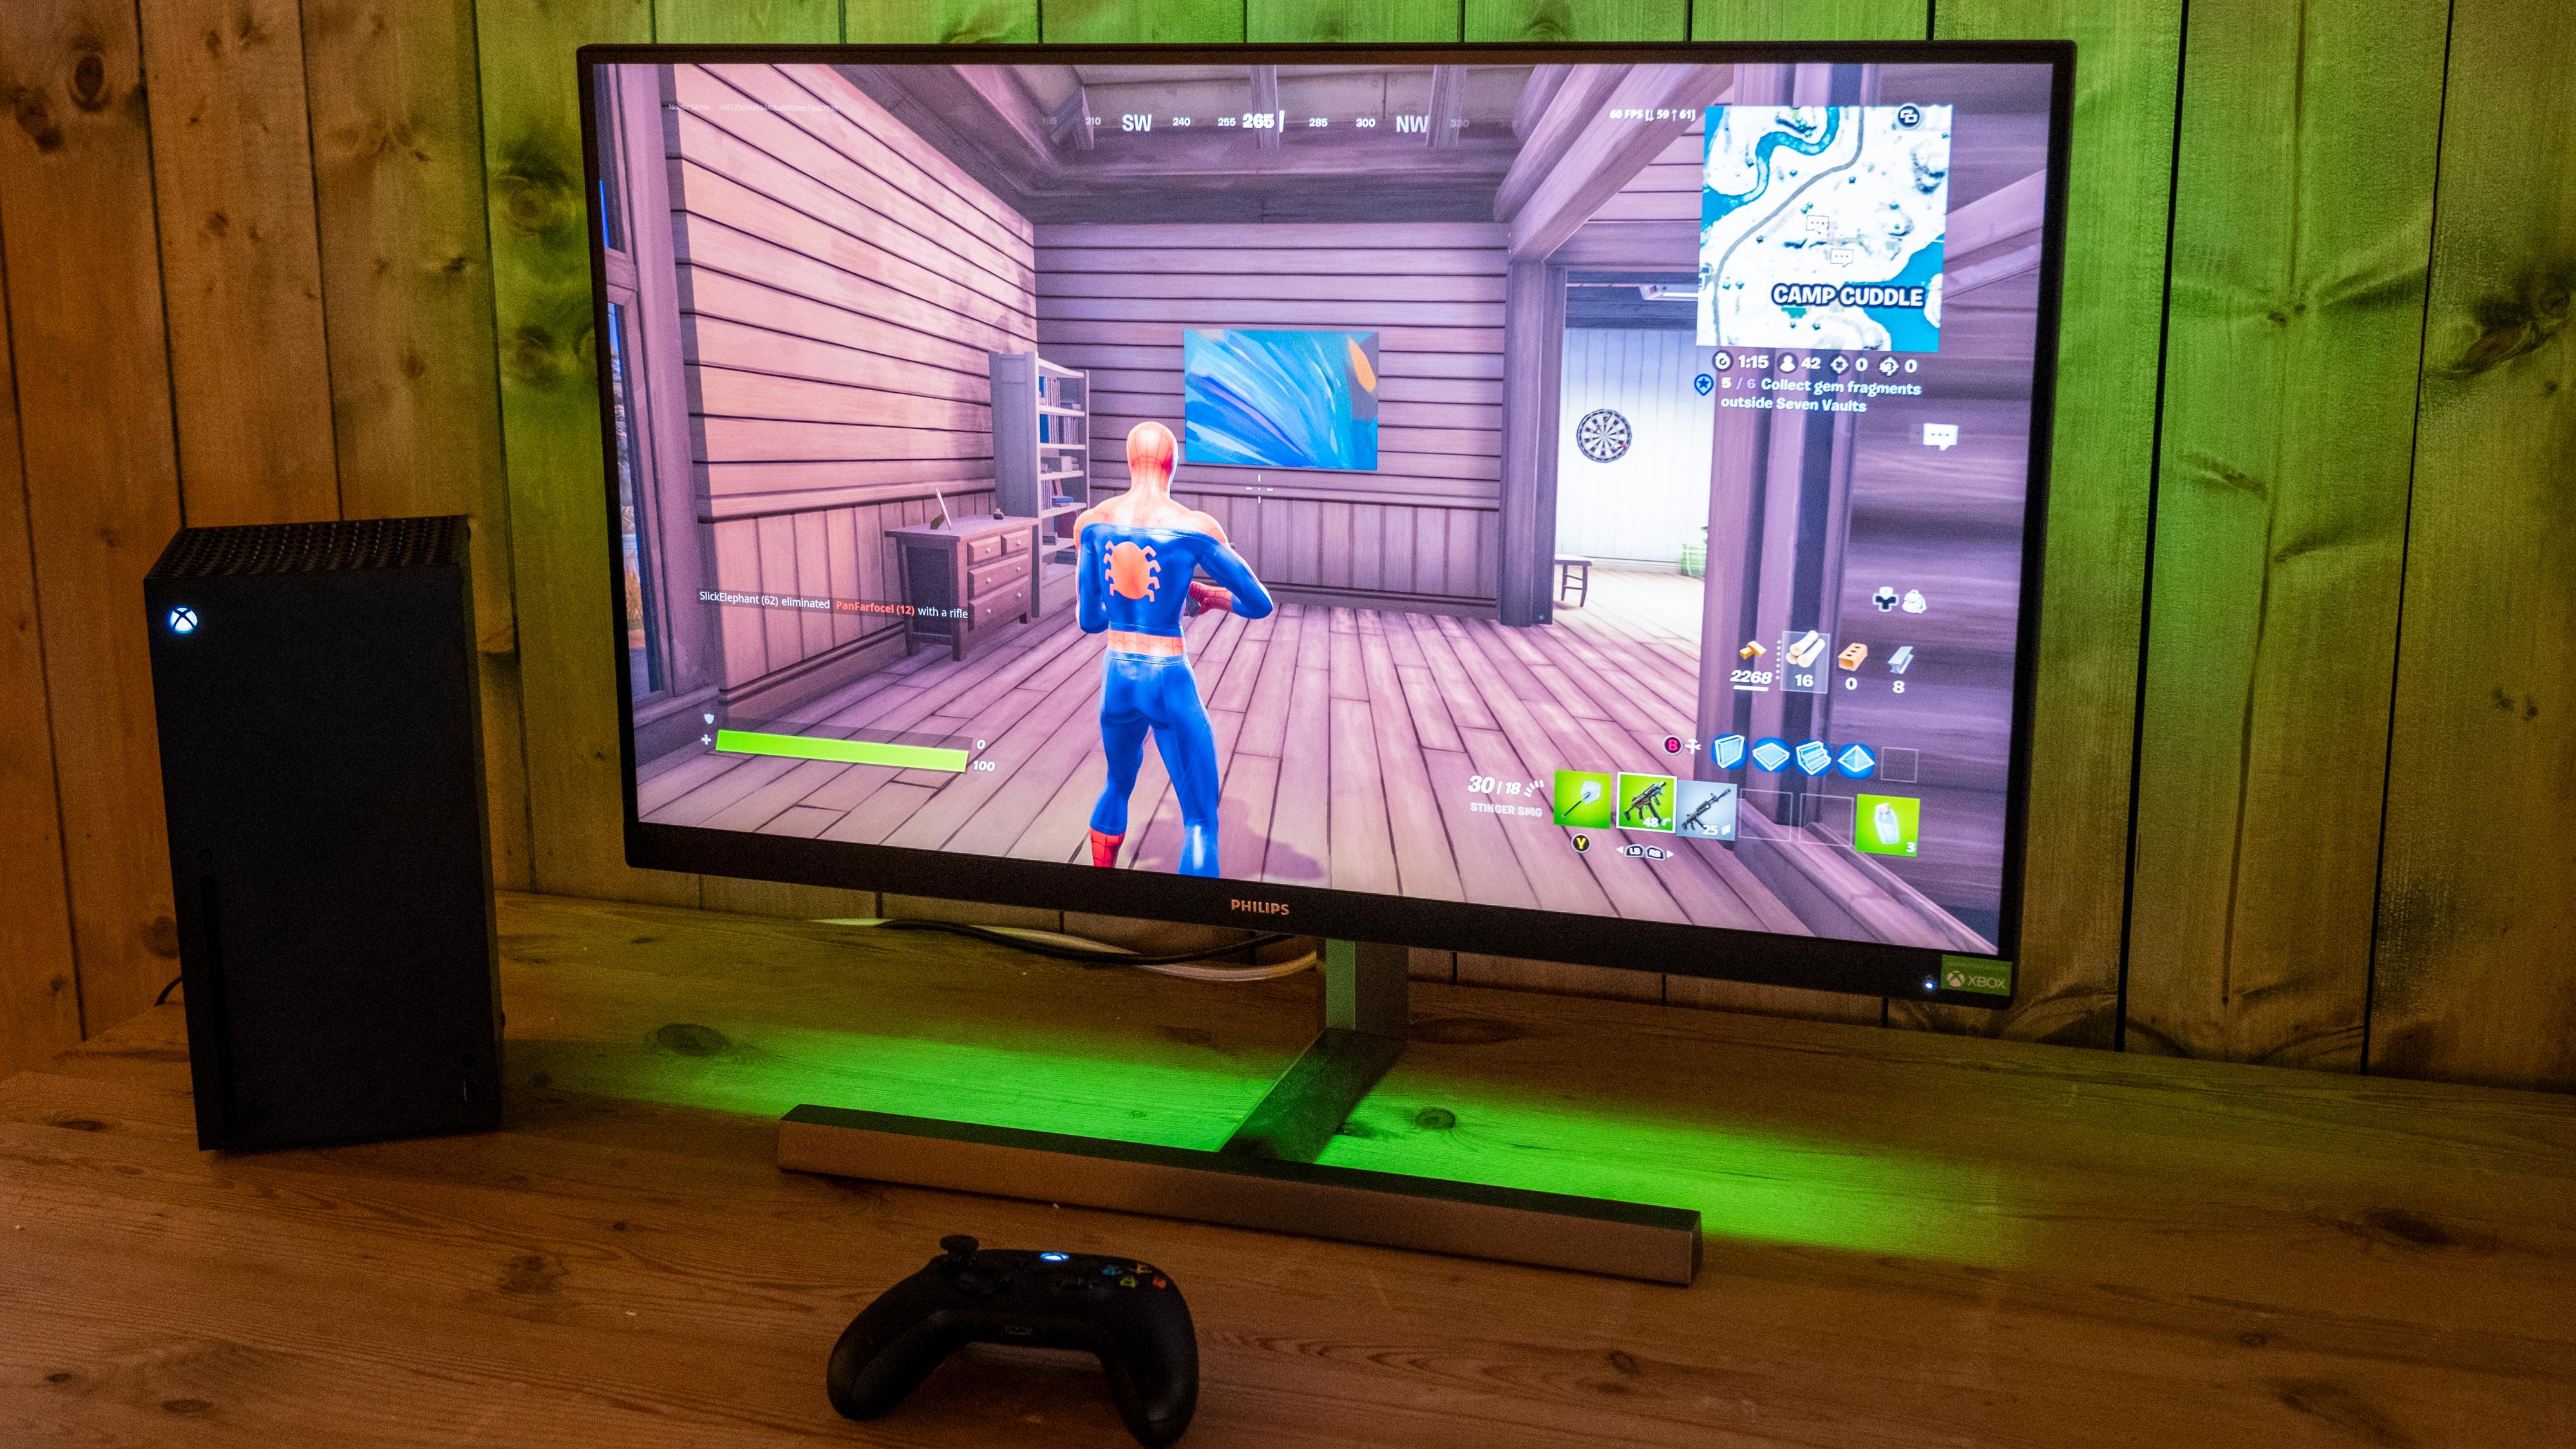 Vi har testet Xbox-skjermen til Philips